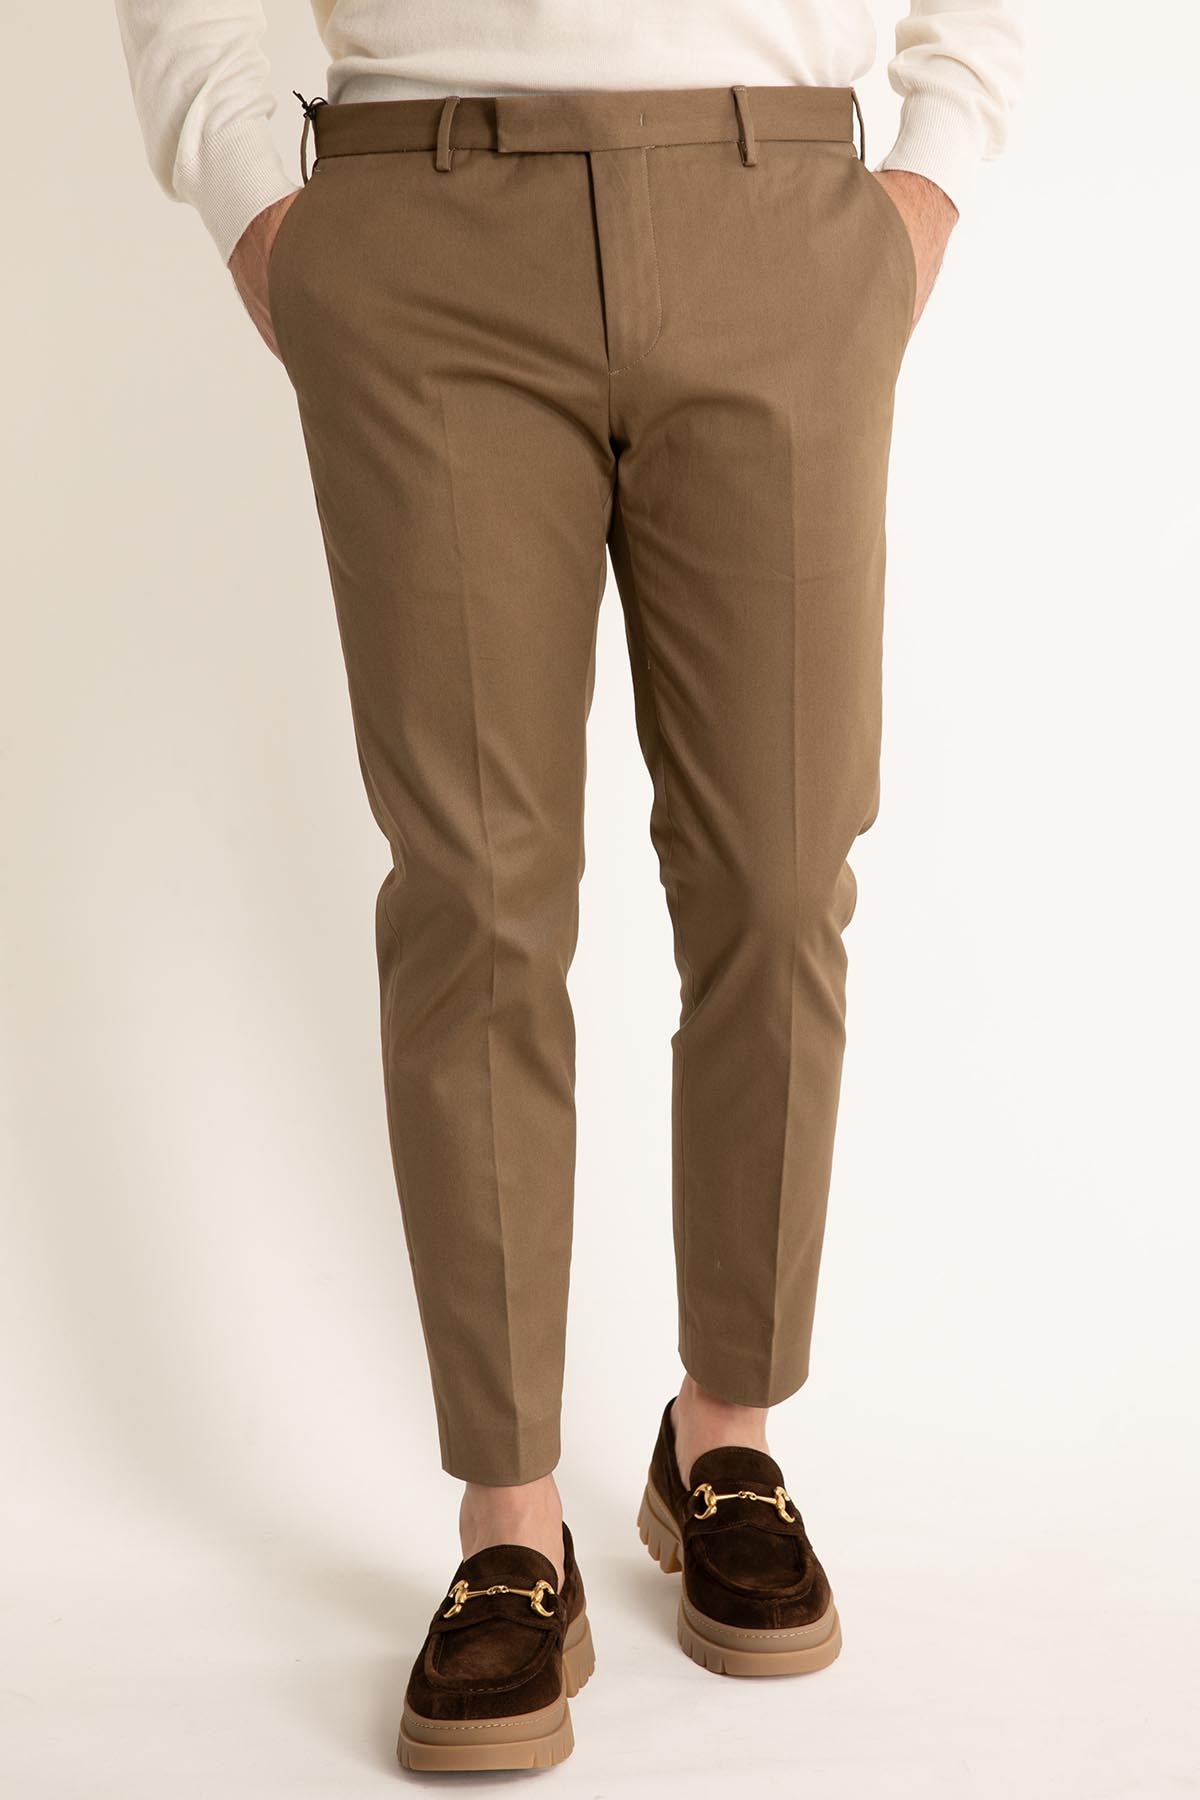 Pantaloni Torino Dieci Fit Pantolon-Libas Trendy Fashion Store